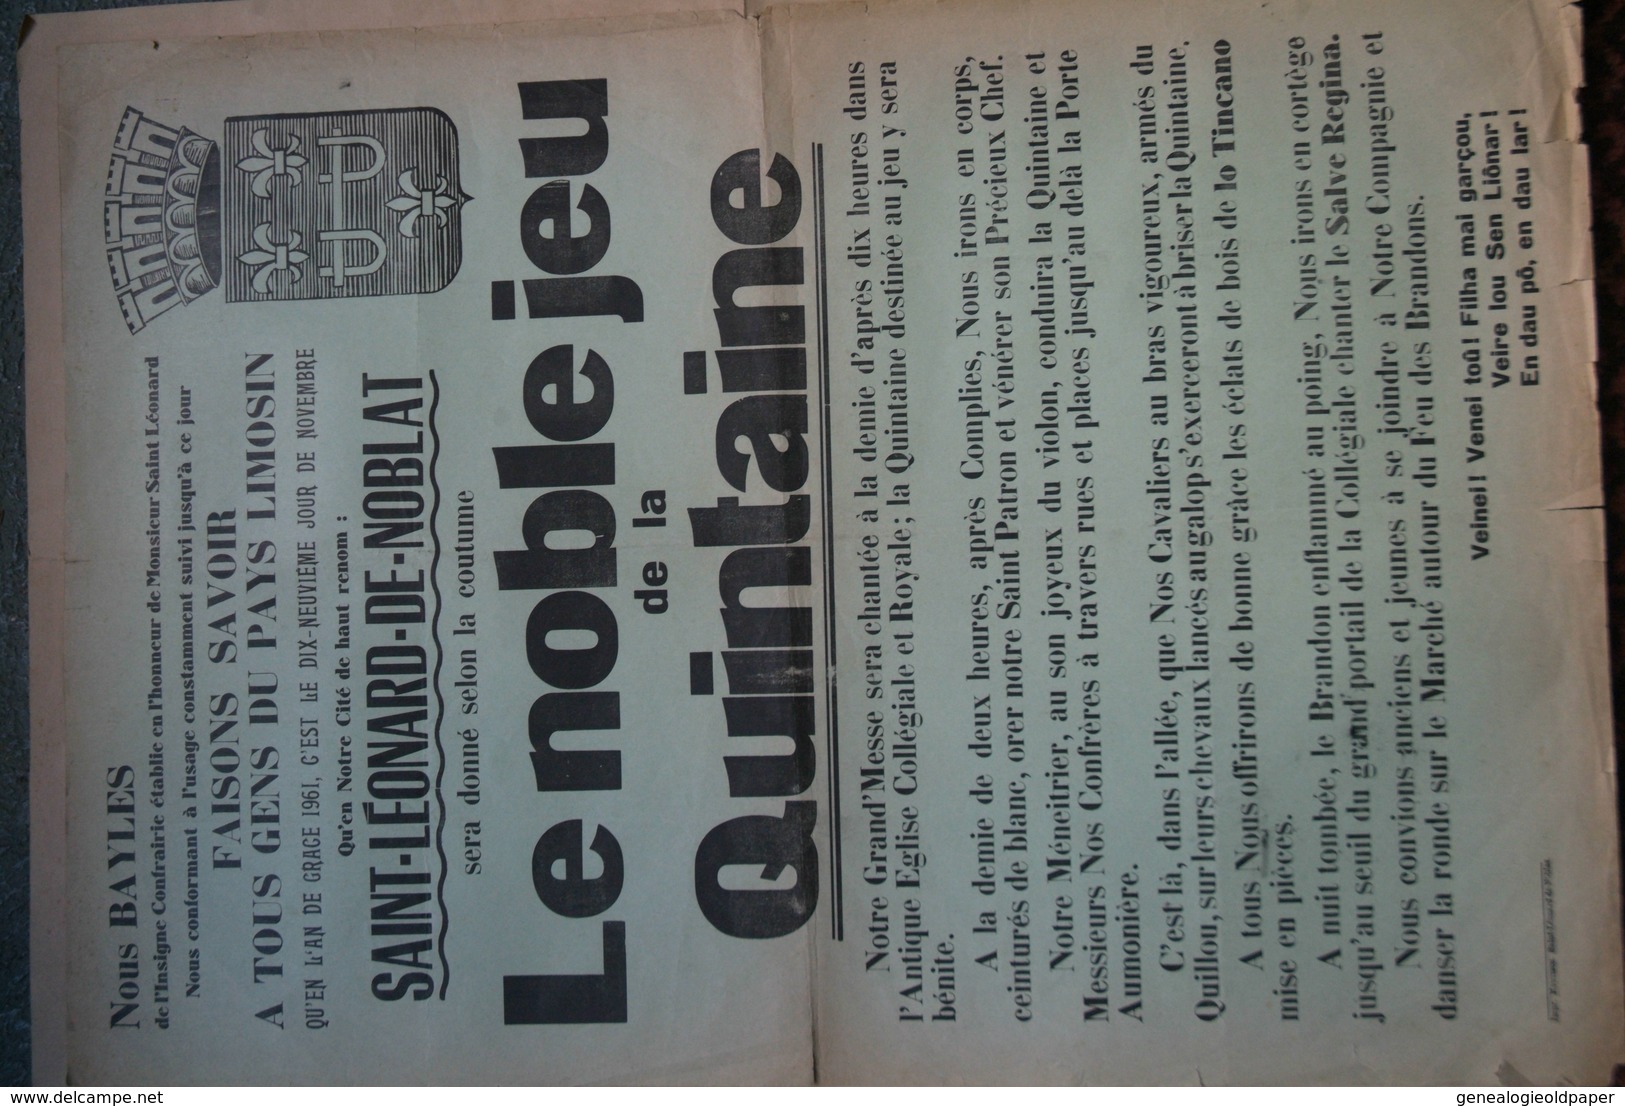 87 -ST SAINT LEONARD NOBLAT-RARE AFFICHE LE NOBLE JEU DE LA QUINTAINE- 1961-BAYLES MESSE EGLISE -IMPRIMERIE MONTIBUS - Plakate